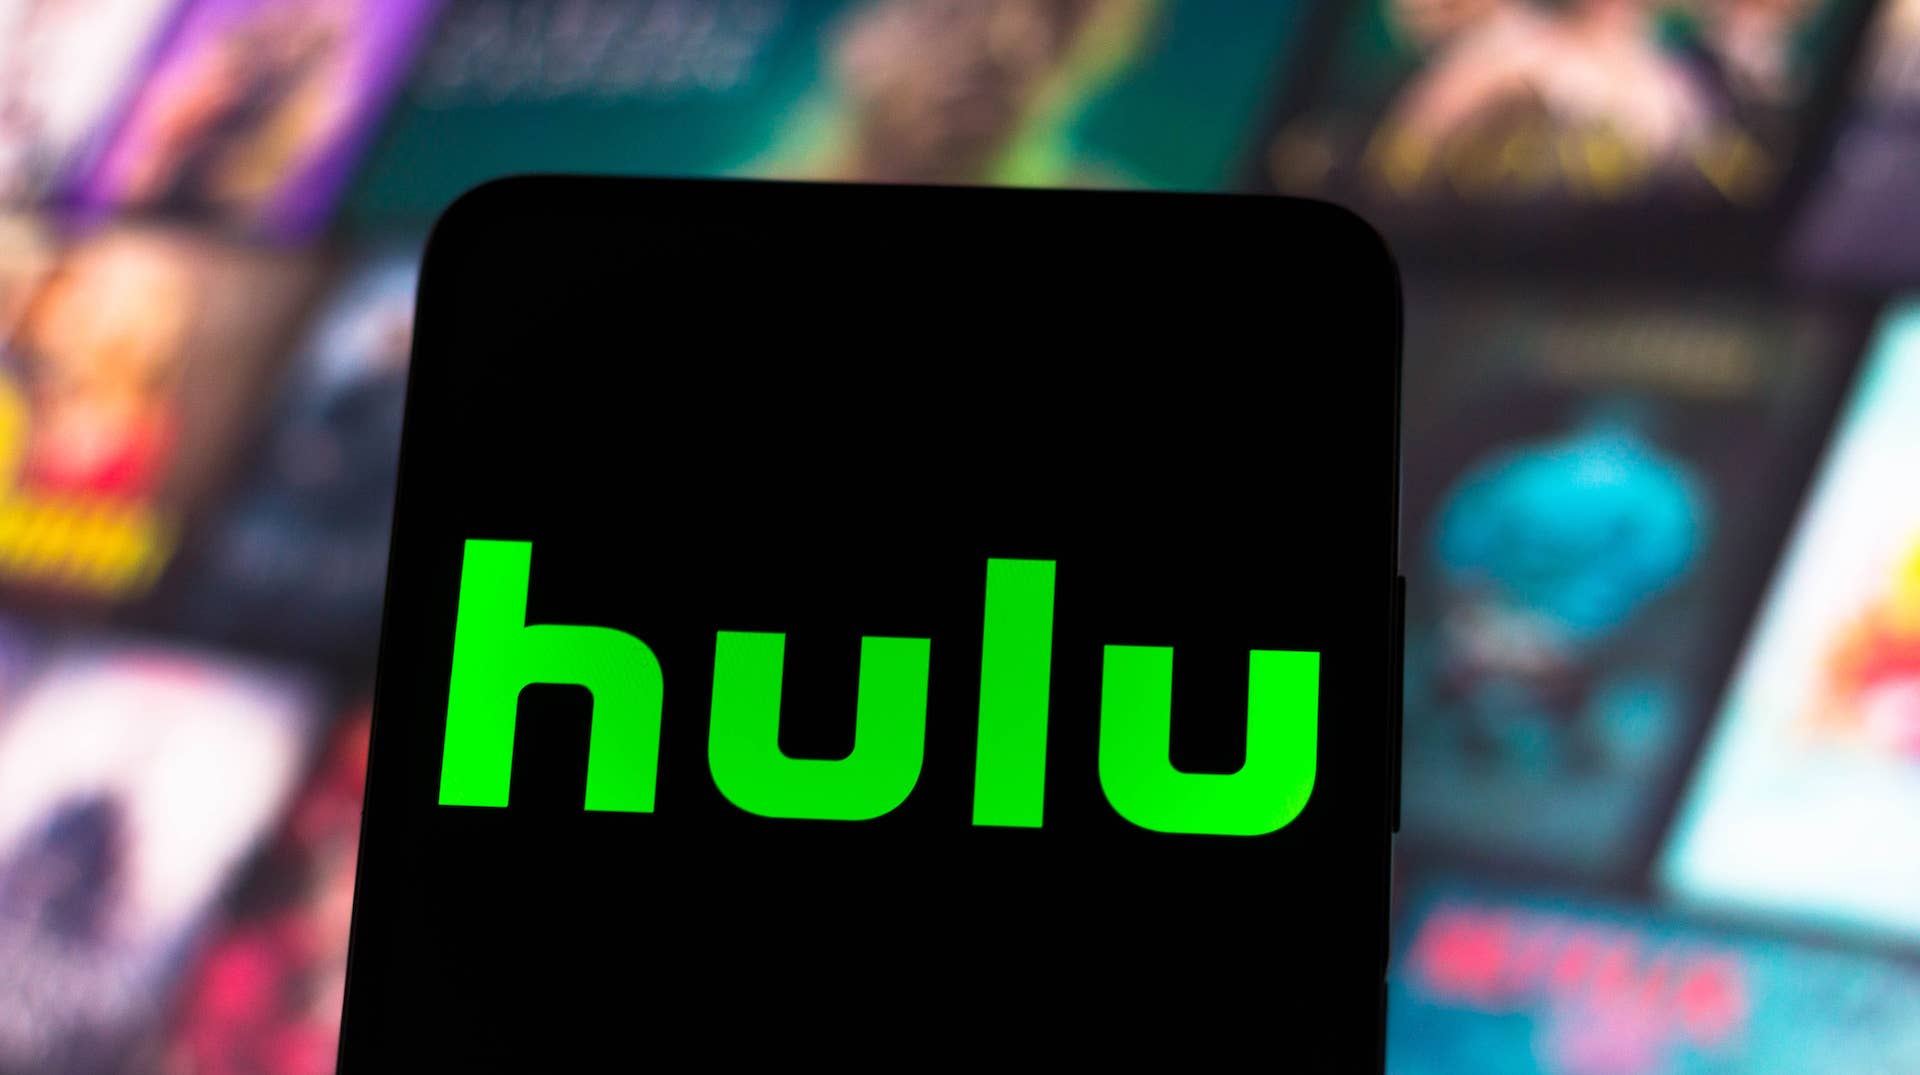 Hulu + Live TV adds unlimited DVR